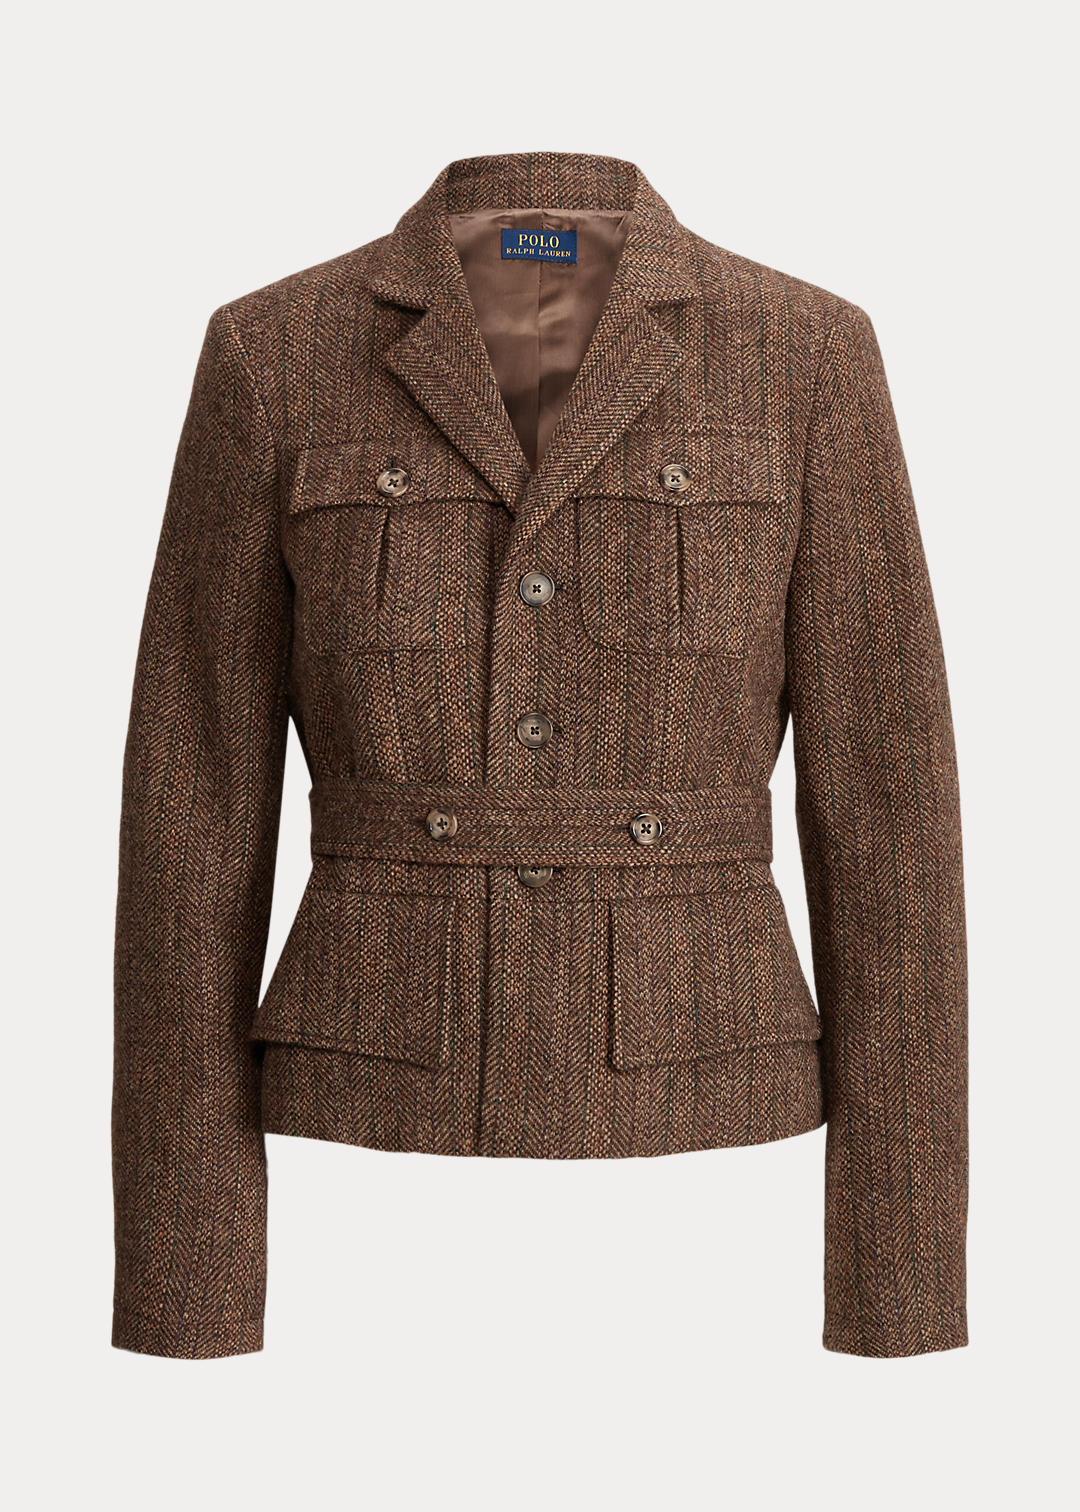 Belted Wool Tweed Utility Jacket